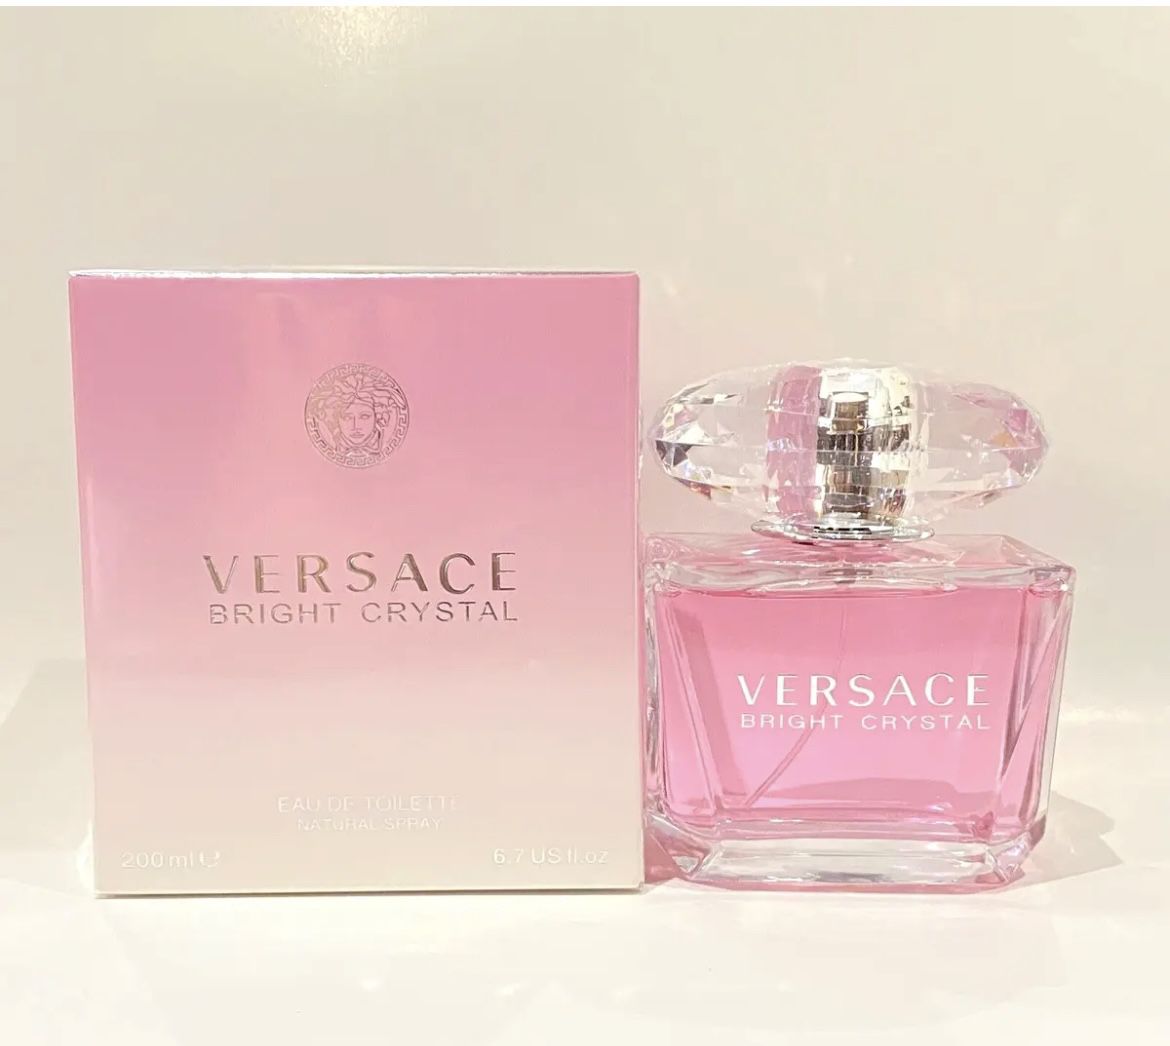 Versace Bright Crystal 6.7oz 